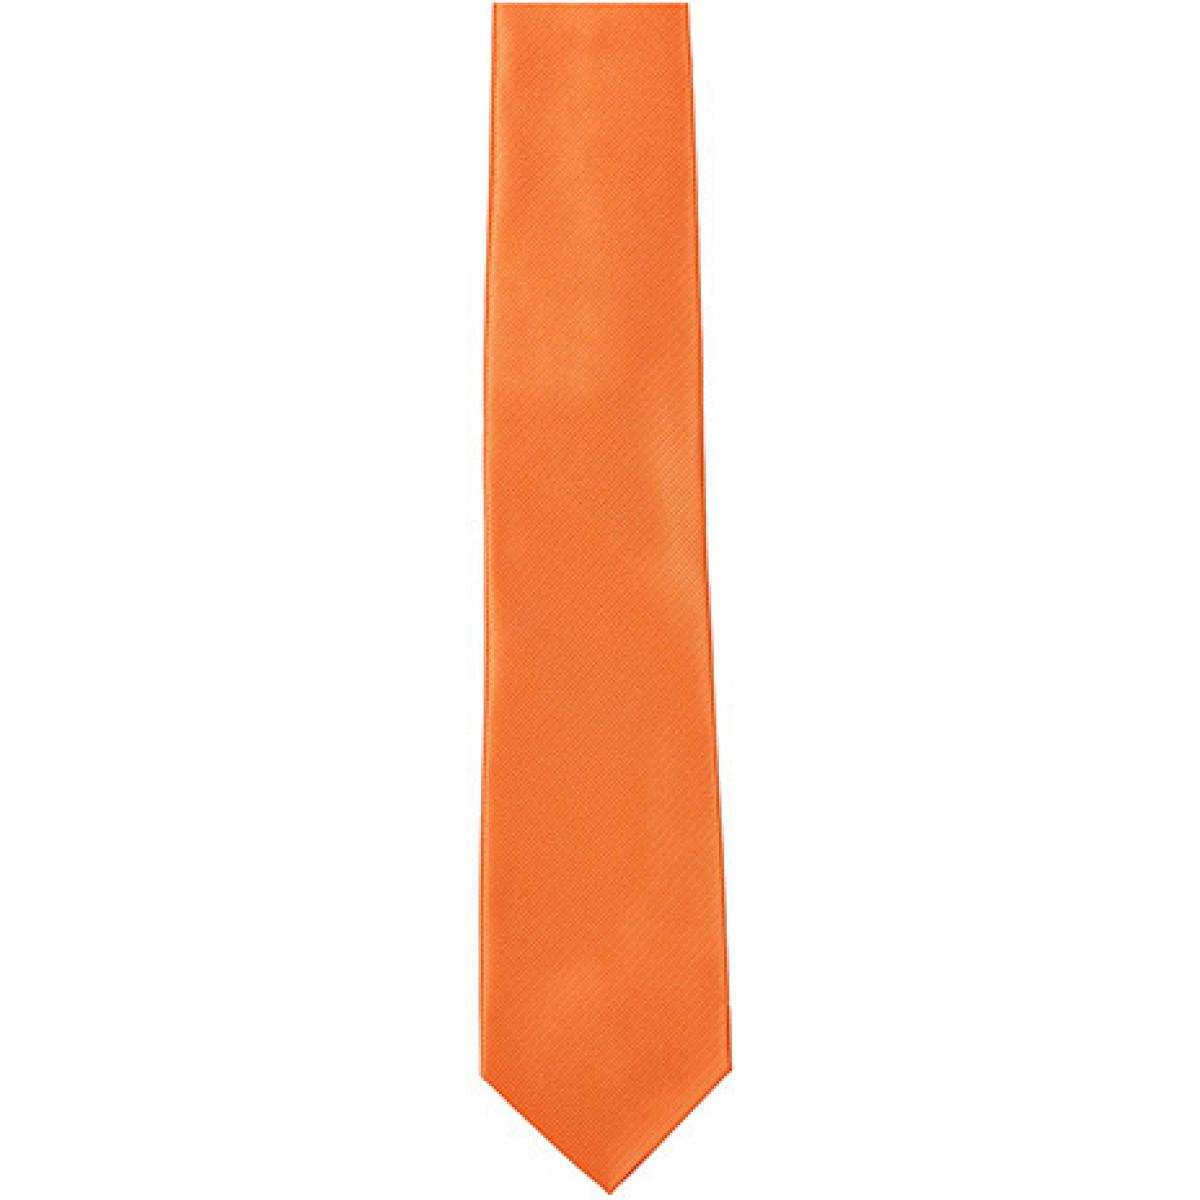 Hersteller: TYTO Herstellernummer: TT902 Artikelbezeichnung: Twill Tie / 144 x 8,5cm Farbe: Orange